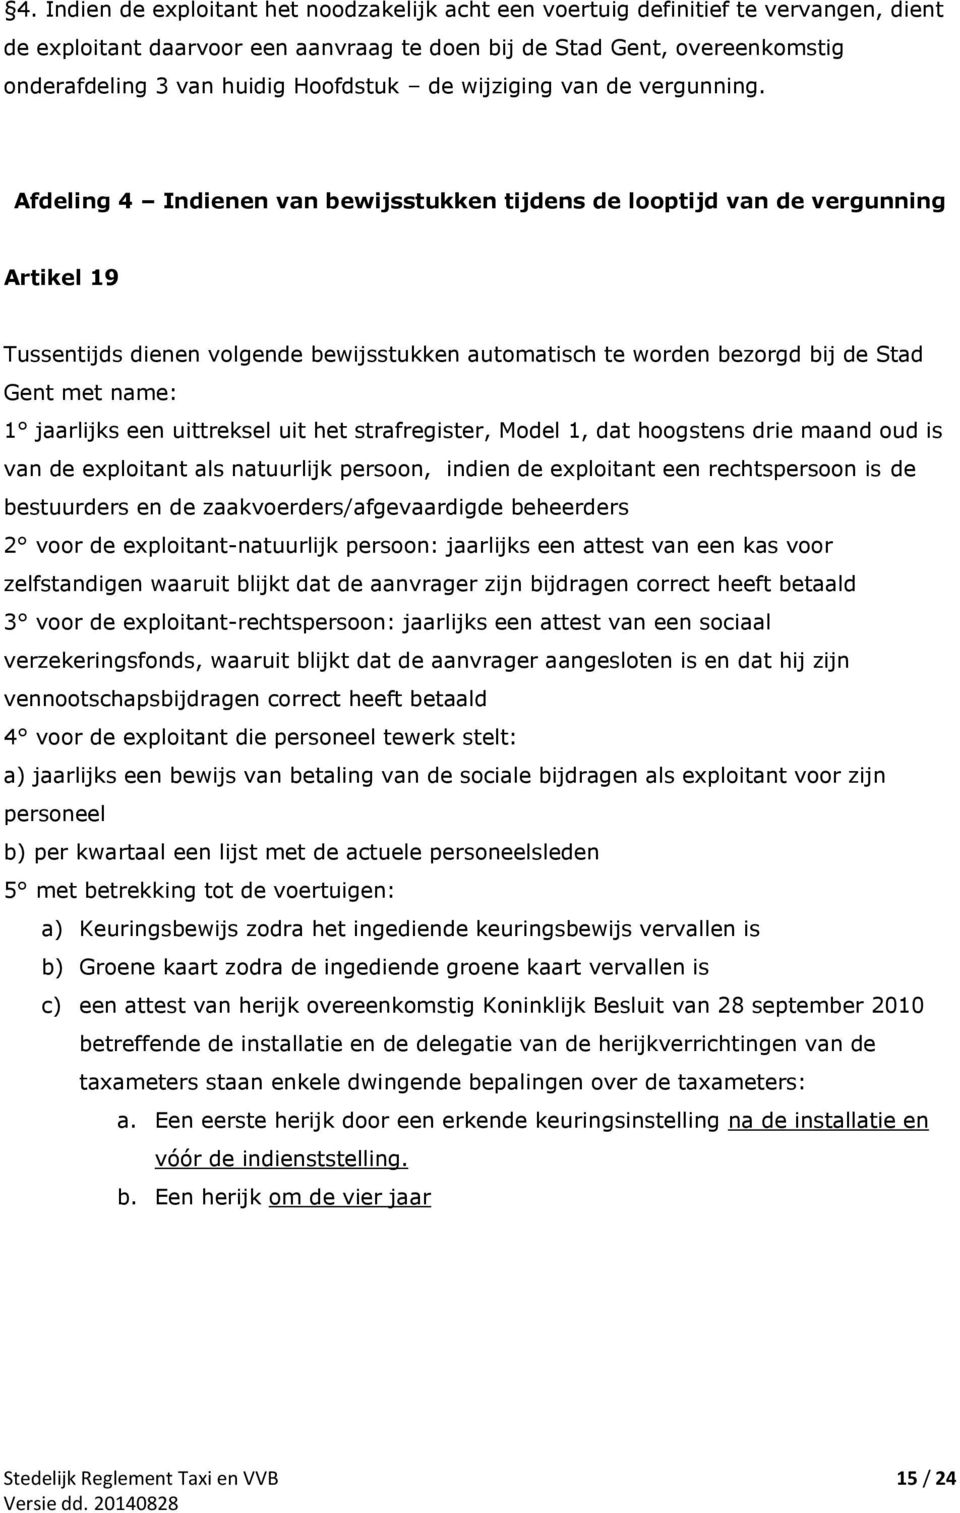 Afdeling 4 Indienen van bewijsstukken tijdens de looptijd van de vergunning Artikel 19 Tussentijds dienen volgende bewijsstukken automatisch te worden bezorgd bij de Stad Gent met name: 1 jaarlijks